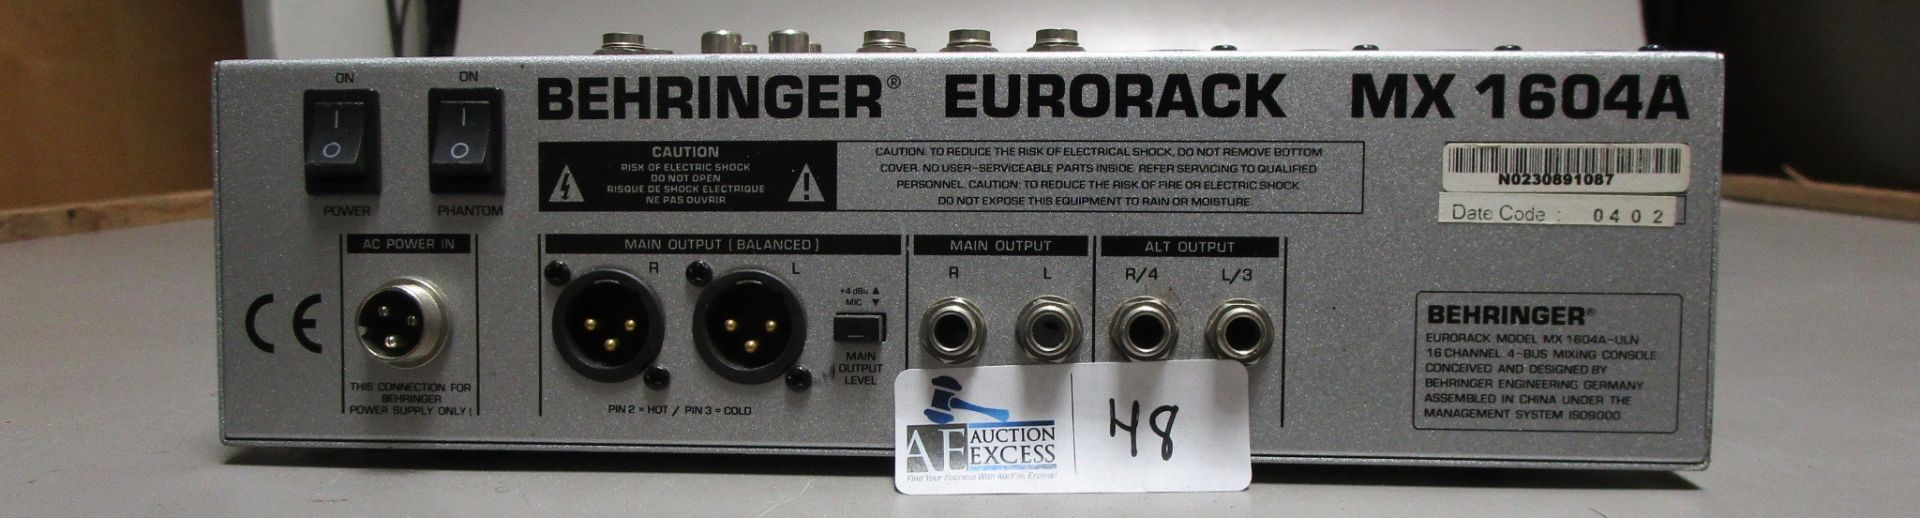 BEHRINGER EURORACK MX1604A - Image 2 of 2